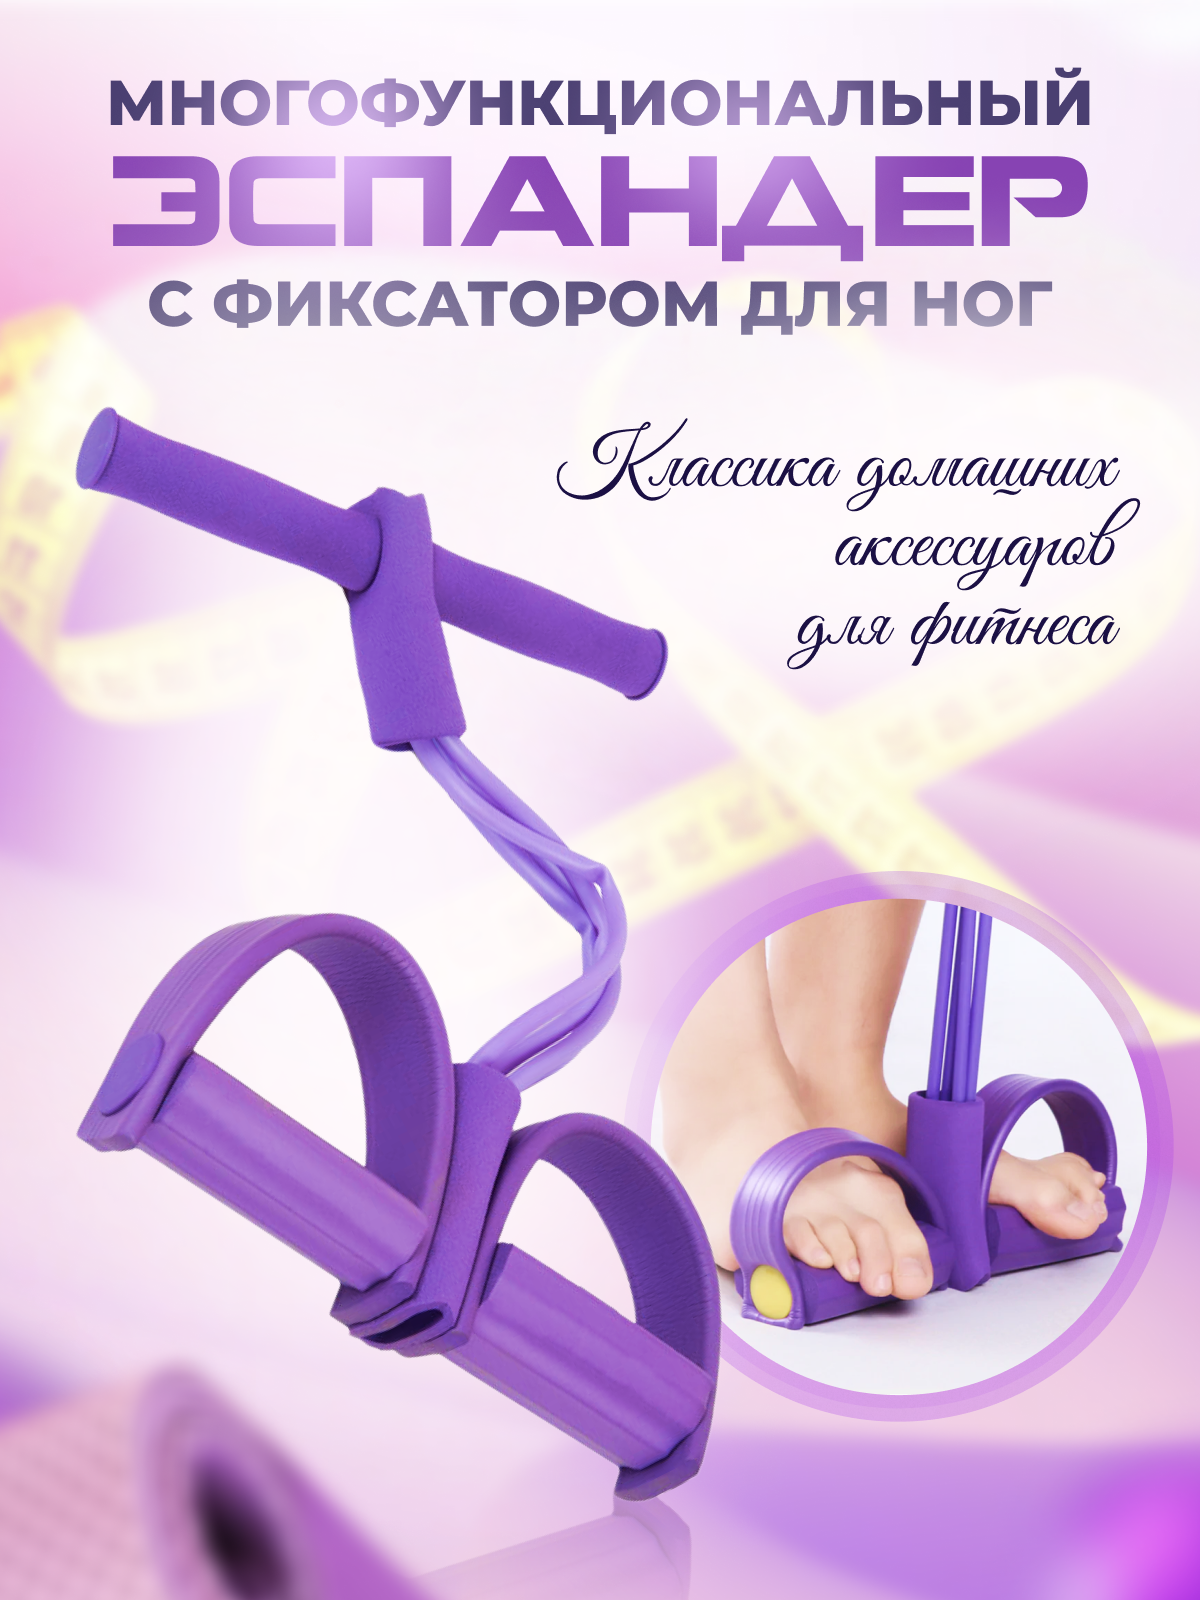 Эспандер для ног универсальный, фиолетовый